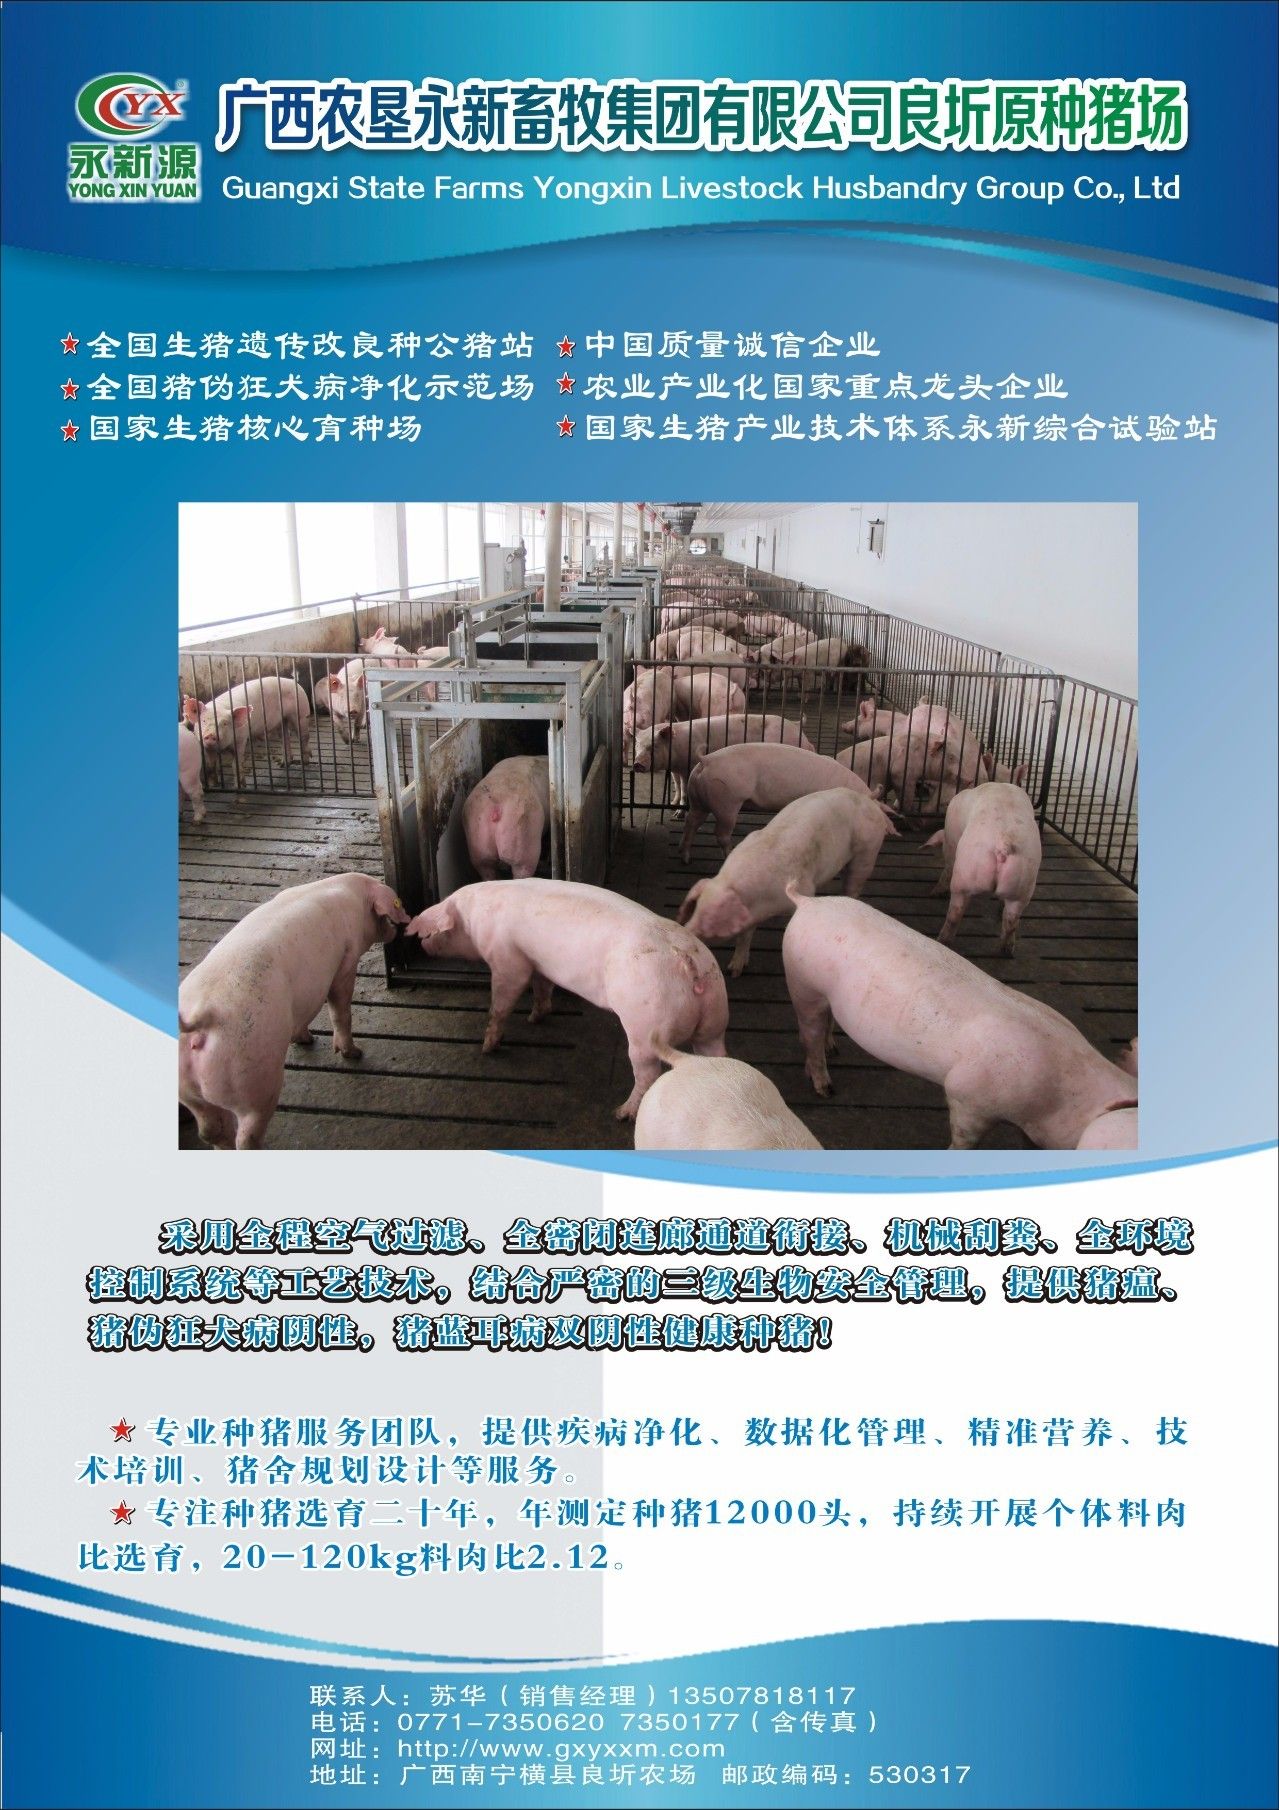 猪场猪群结构,占栏头数以及圈栏数的计算方法